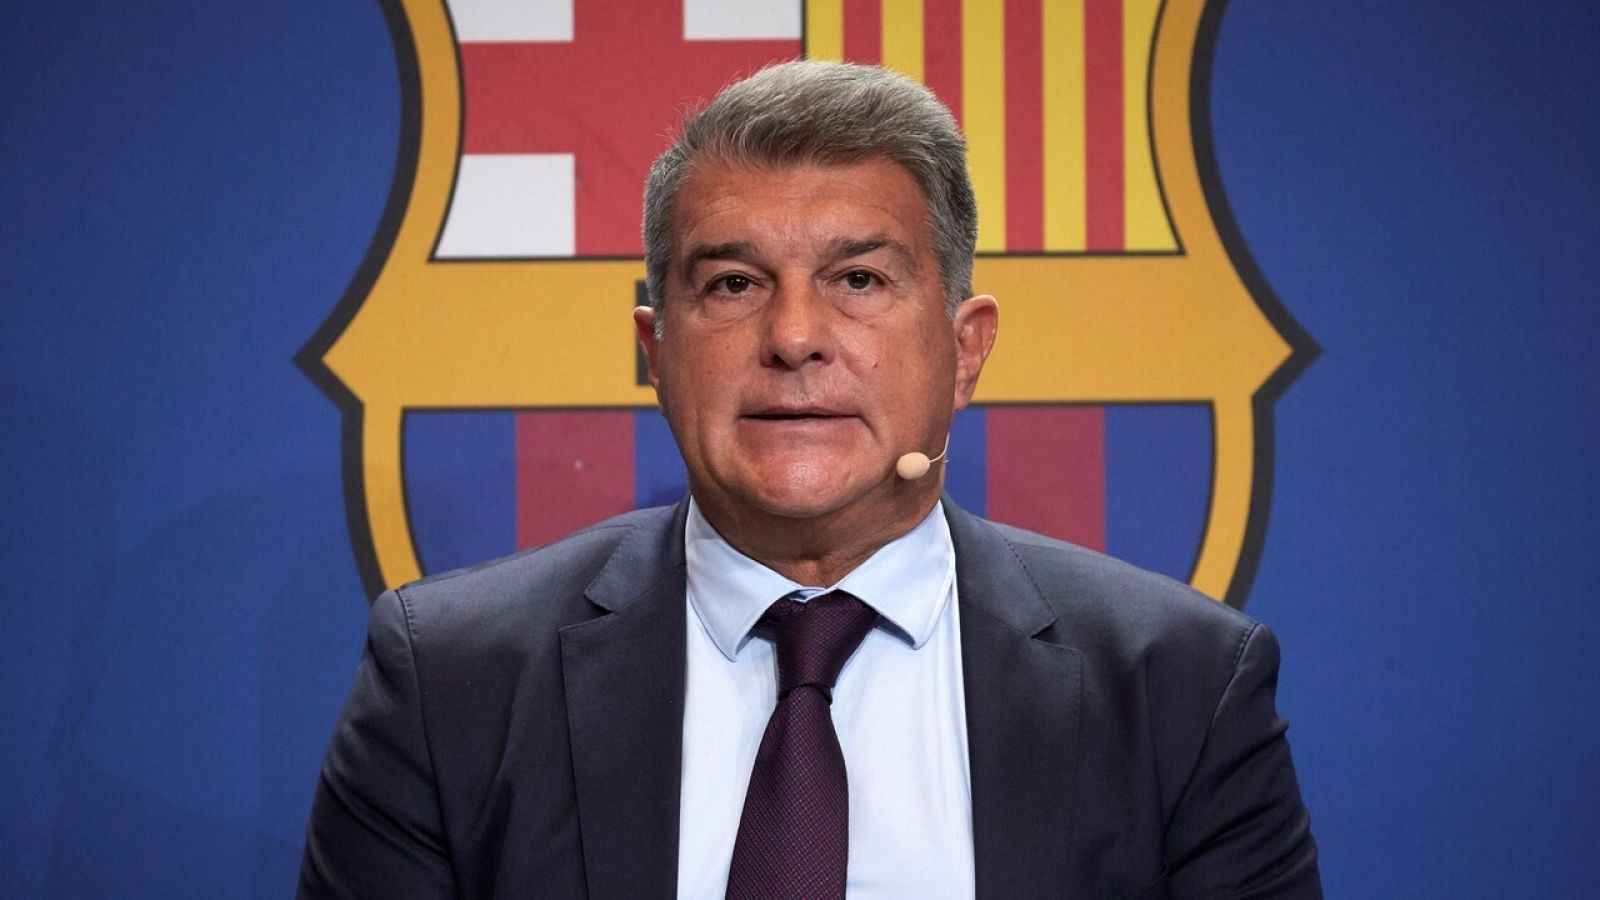 El Barça denuncia a Bartomeu por pagos "sin causa, causa falsa o desproporcionados"